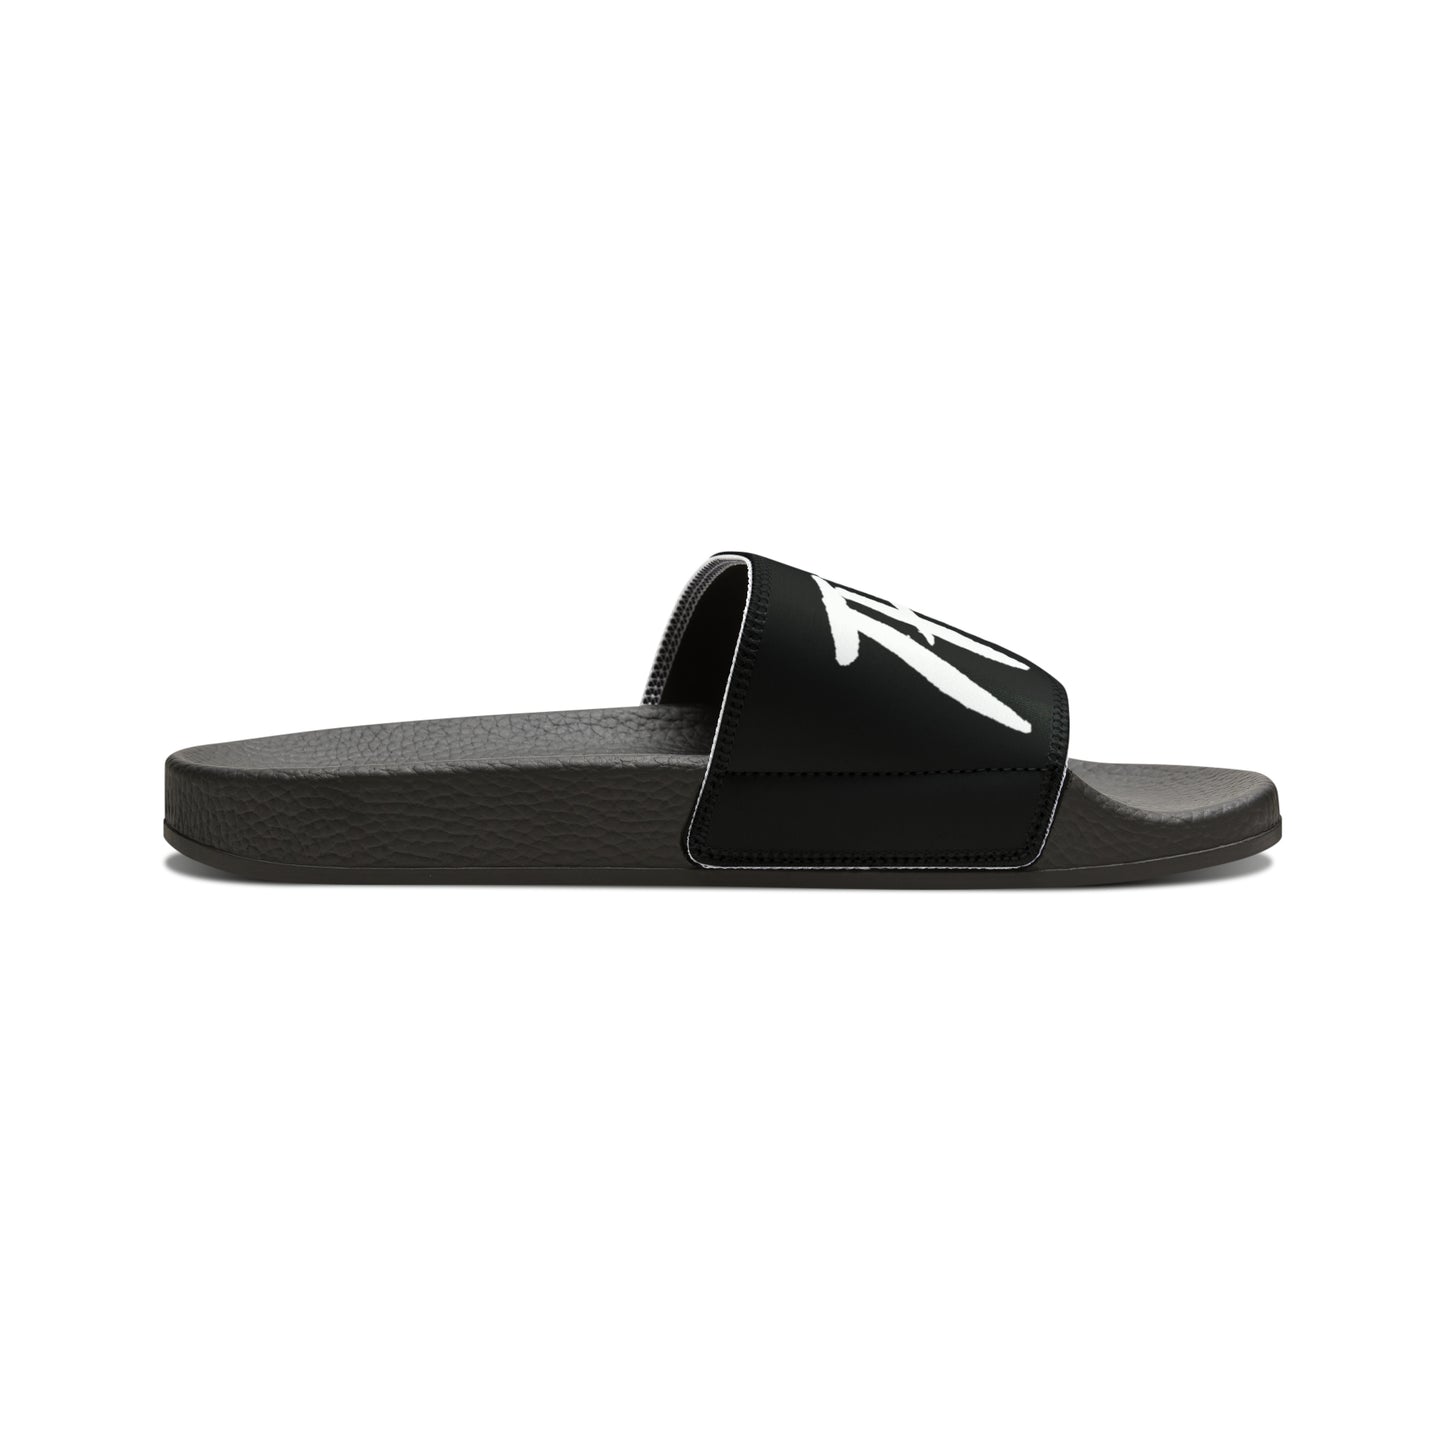 Fromth33rd Men's Slide Sandals